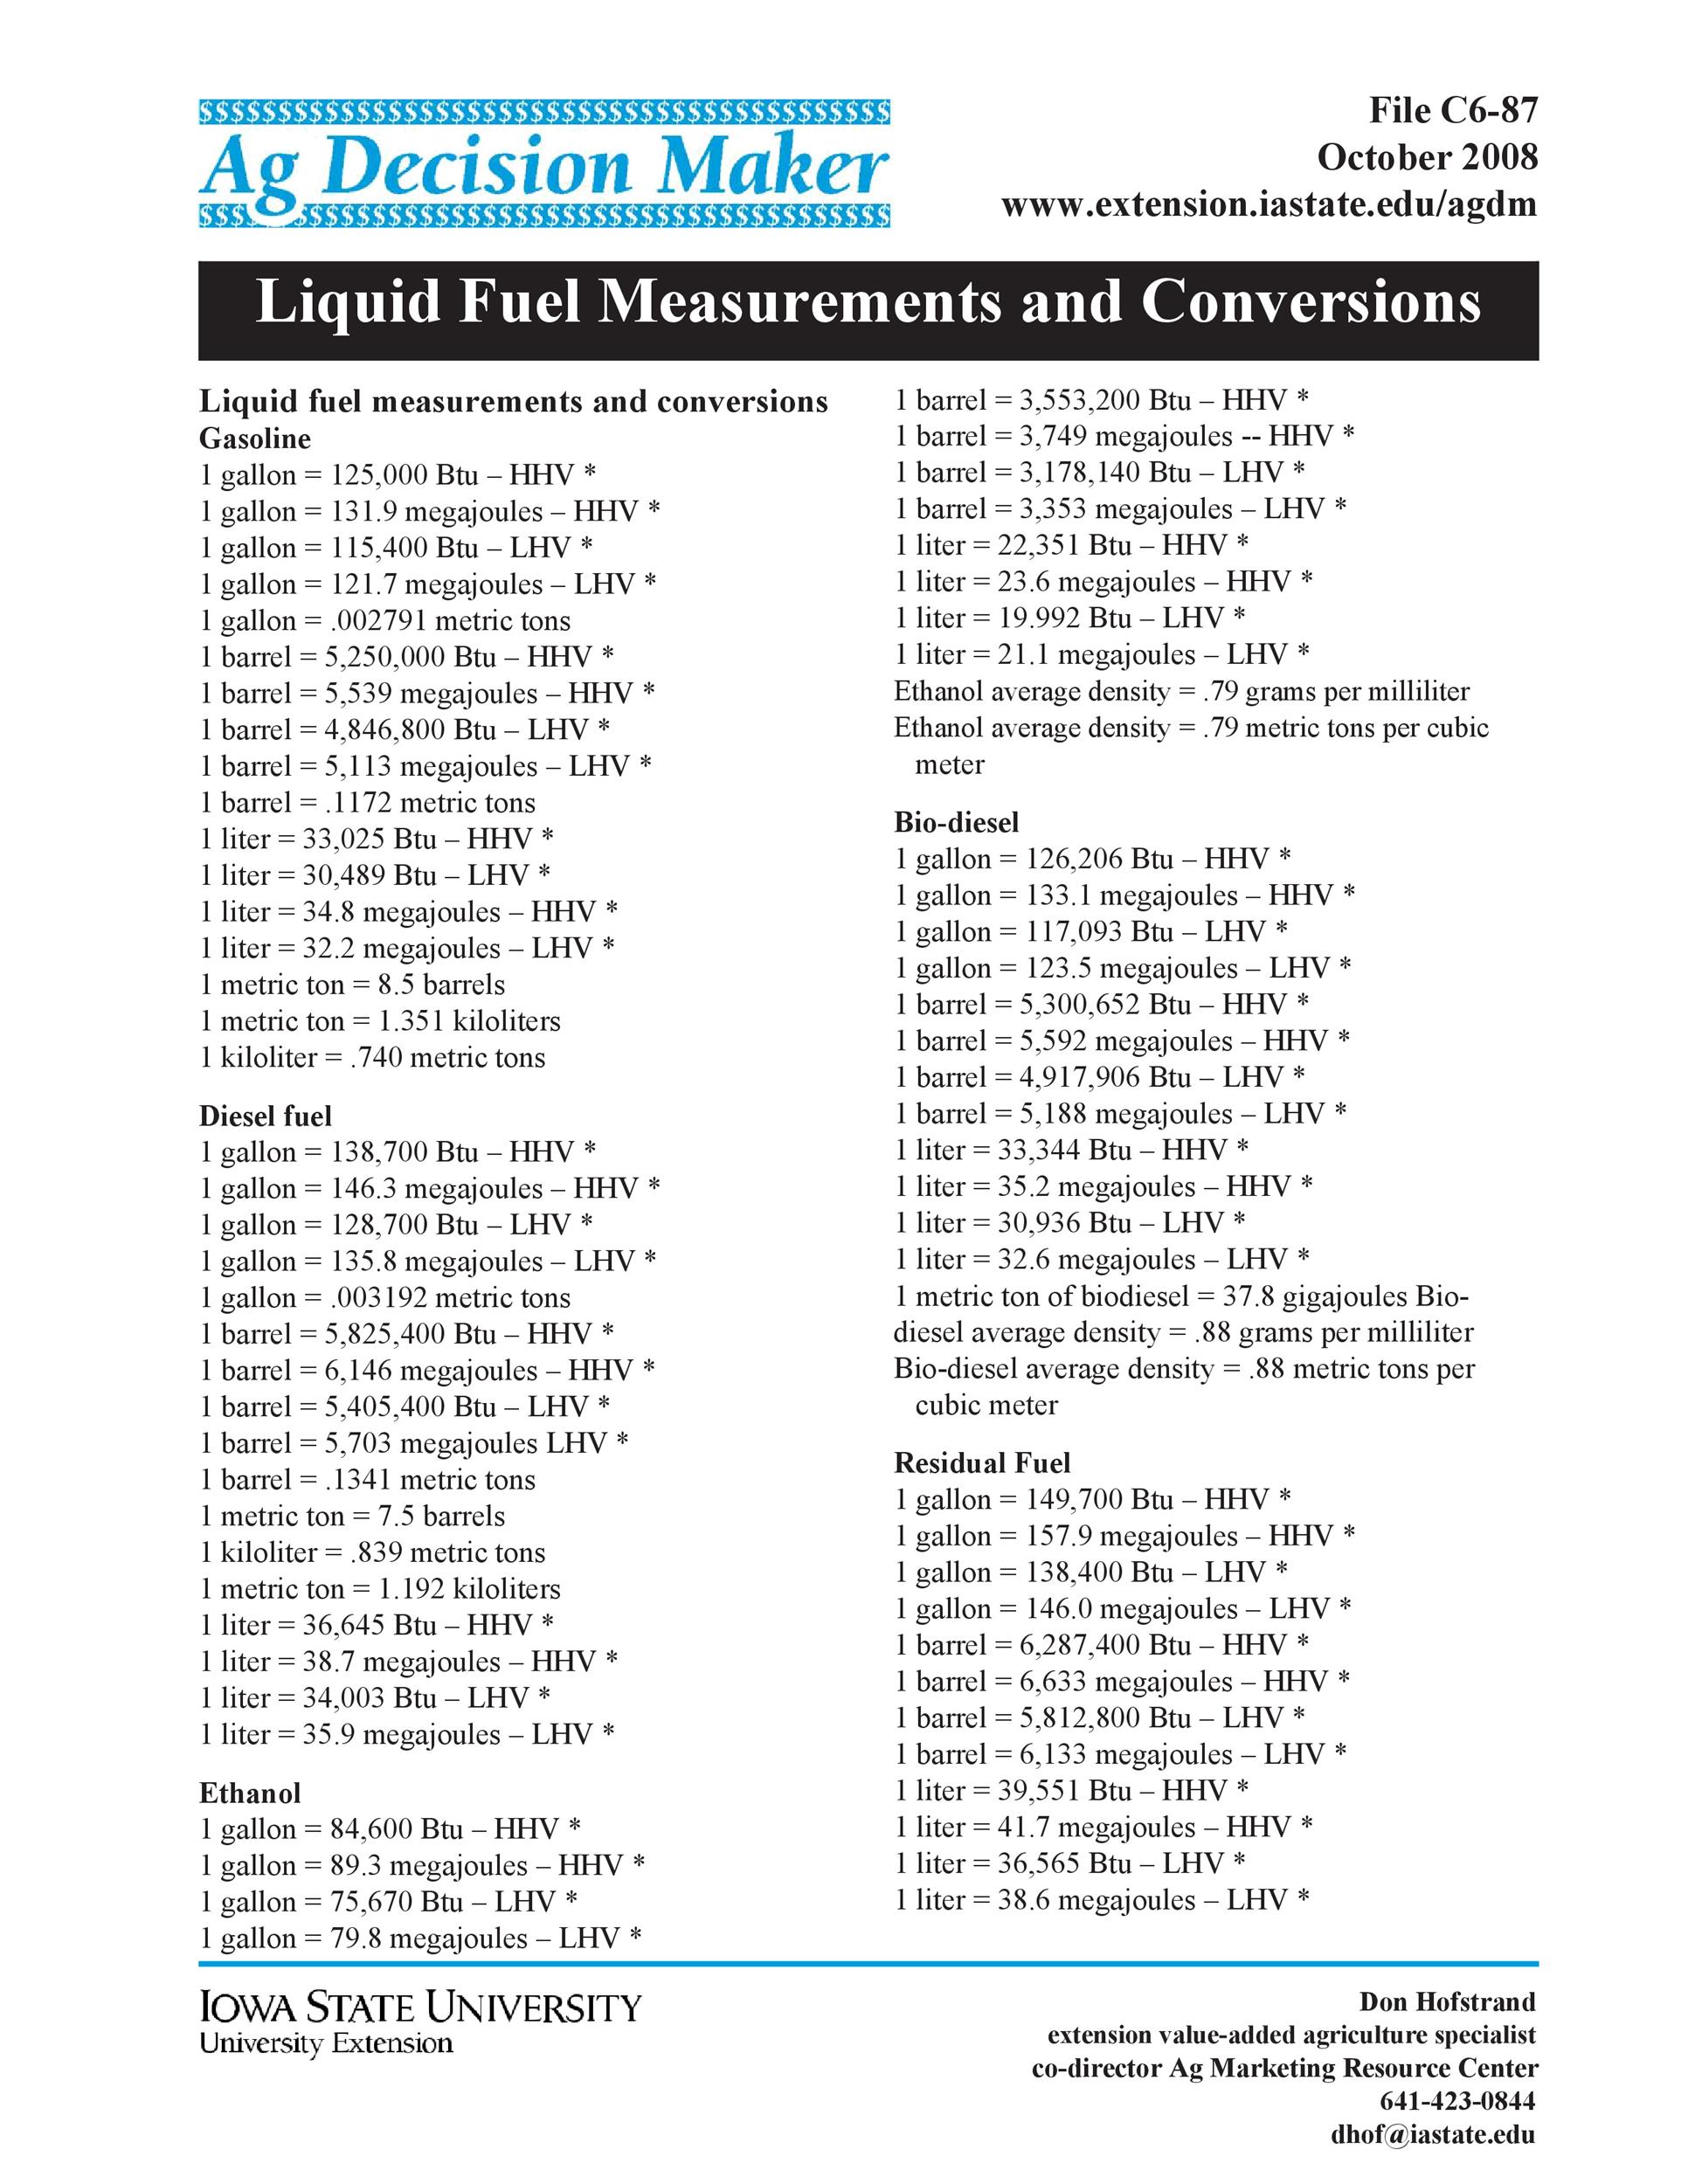 45-printable-liquid-measurements-charts-liquid-conversion-templatelab